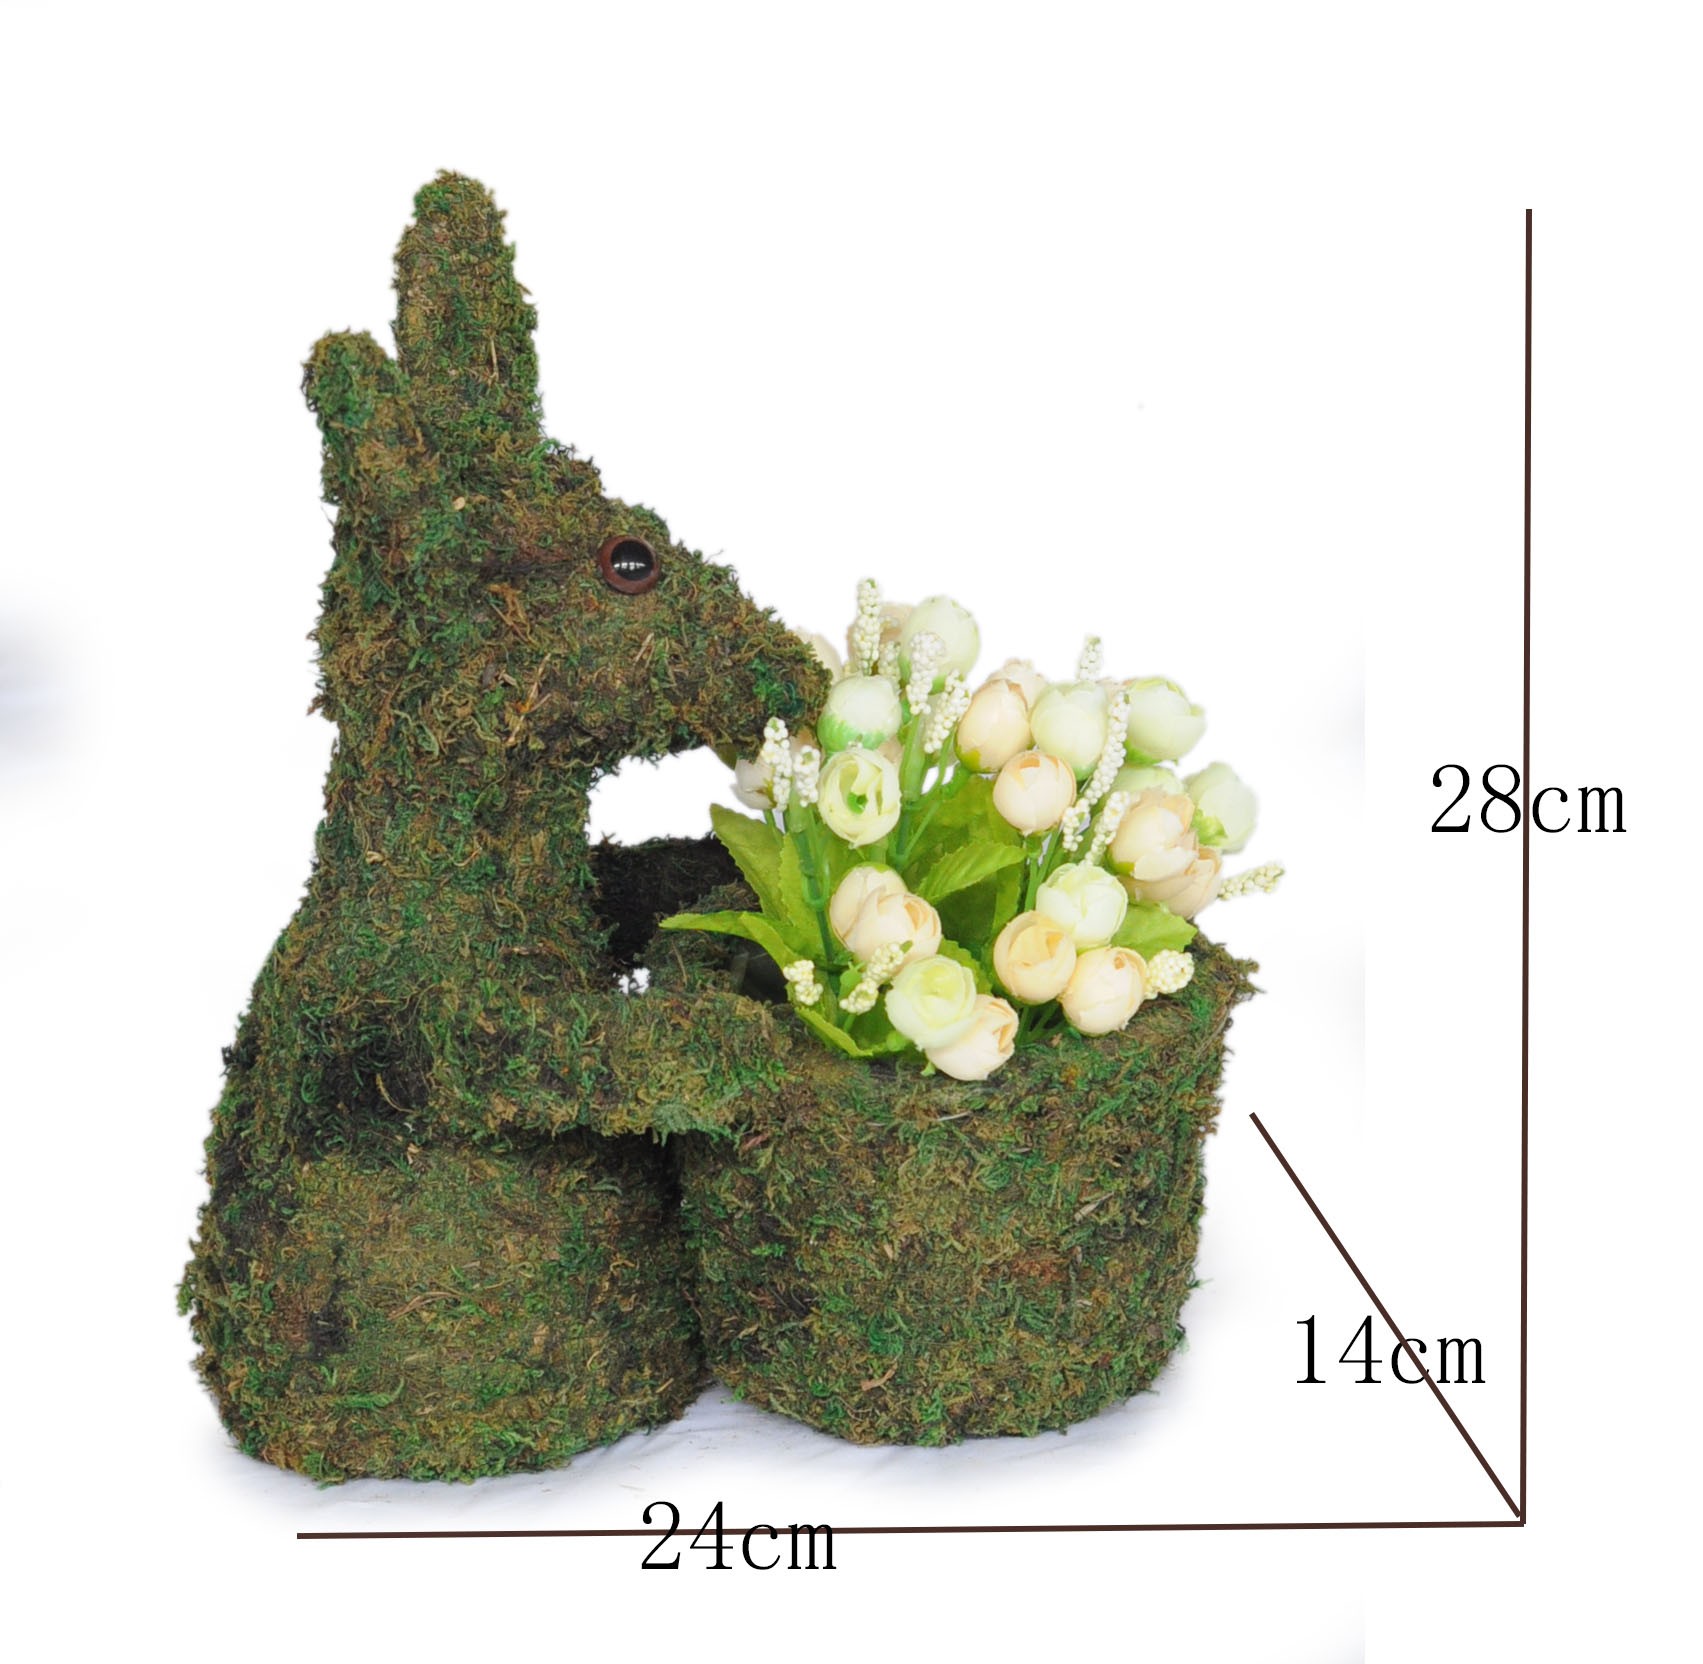 Moss Easter Rabbit - -AP-04